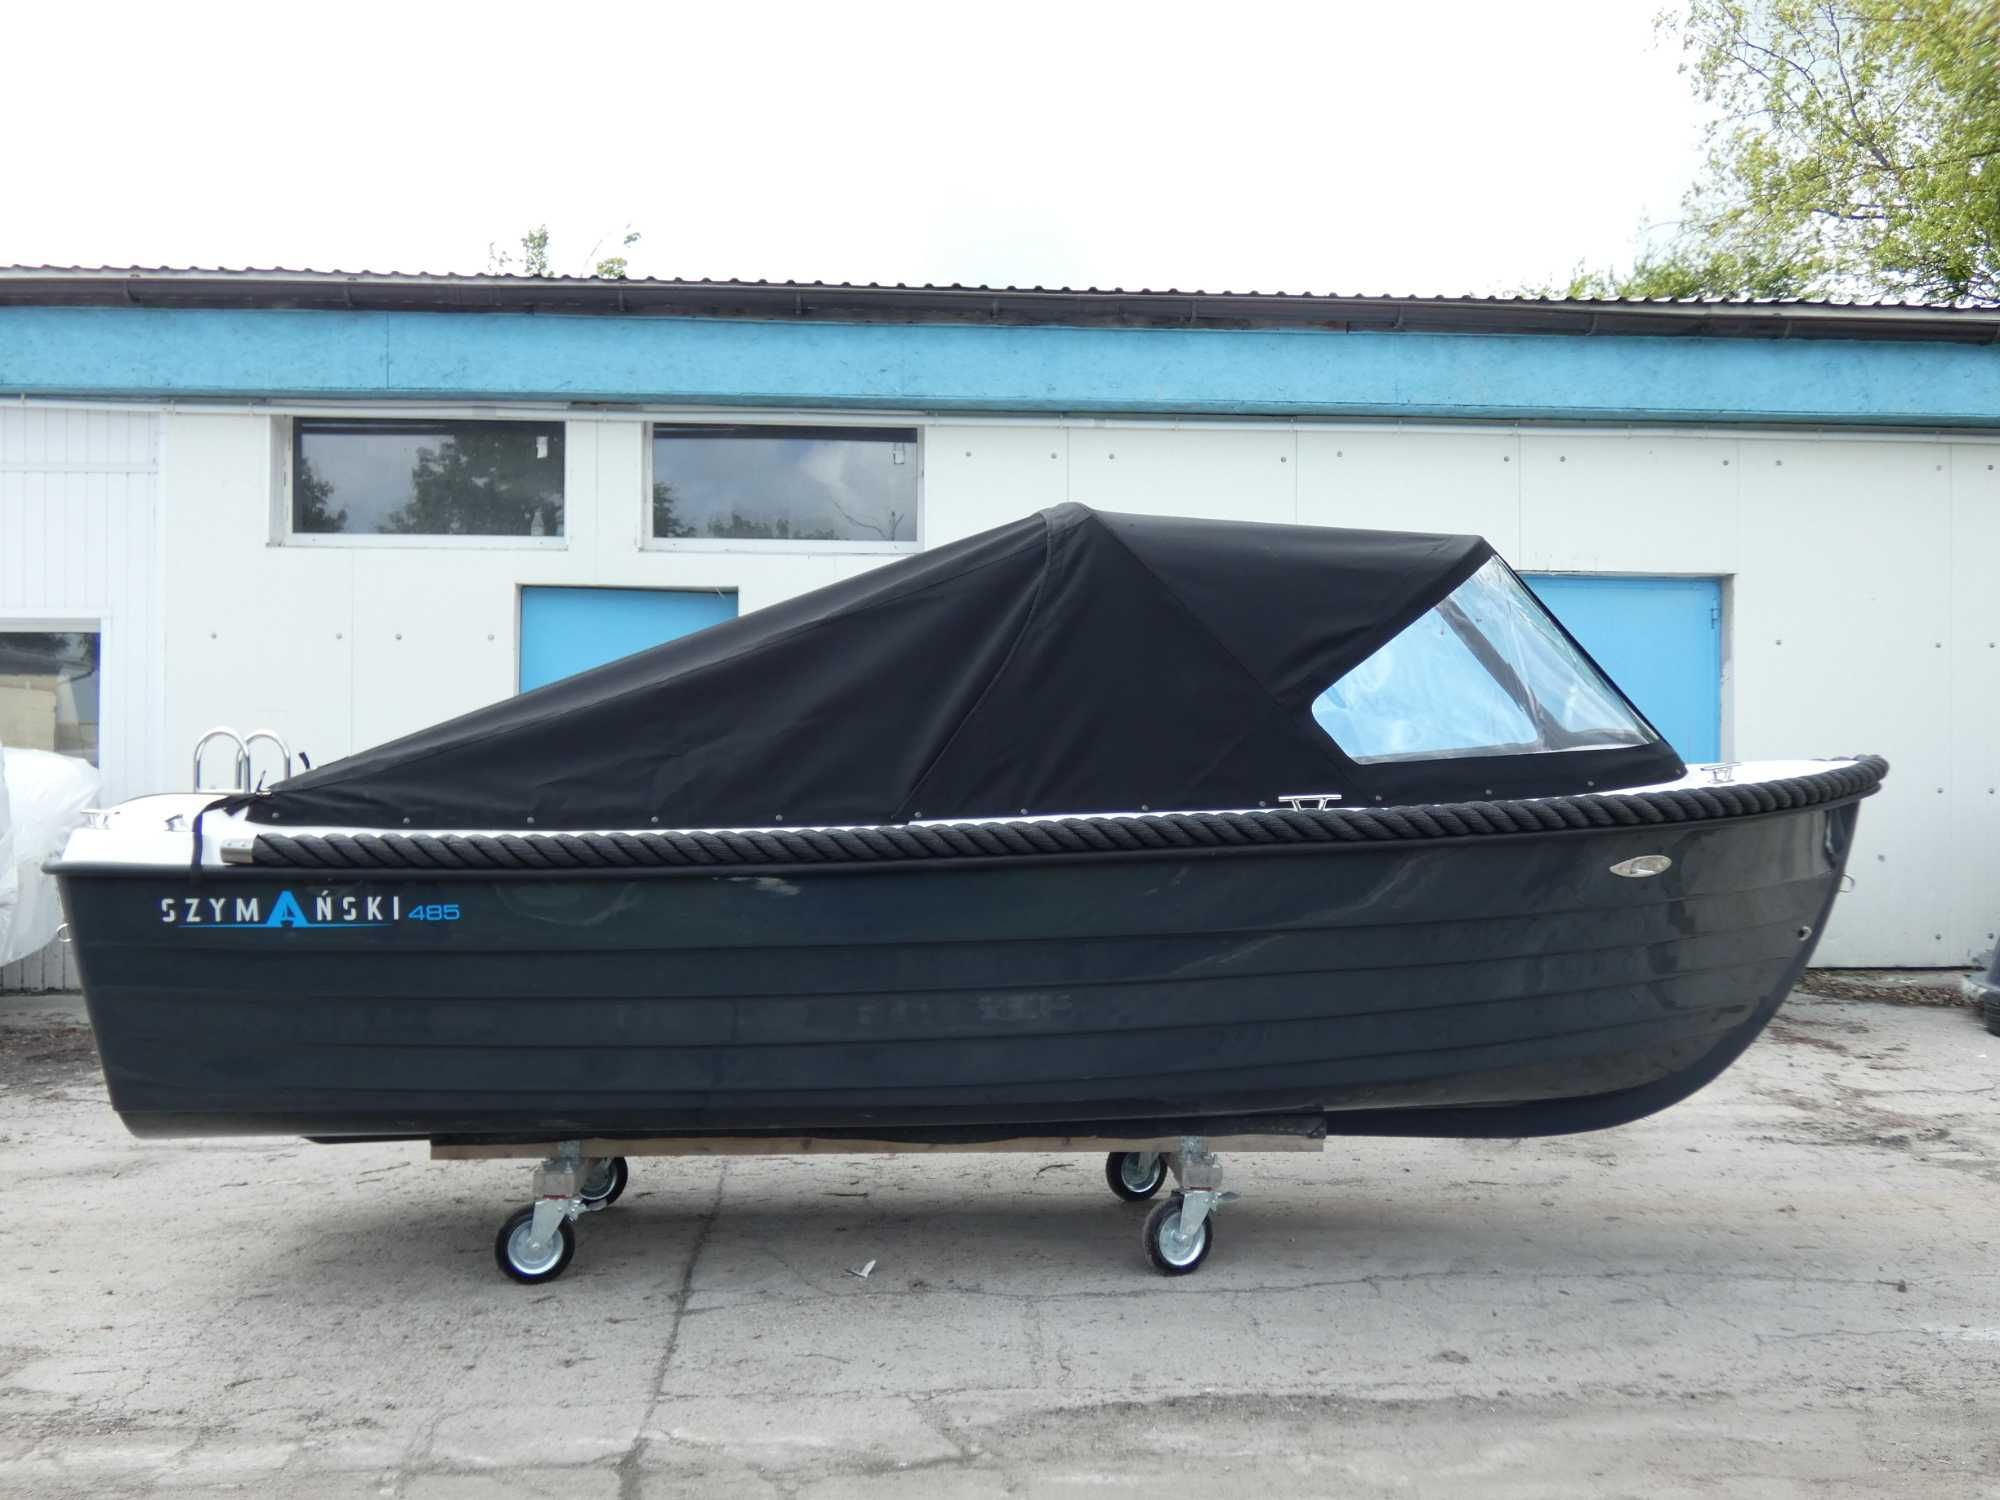 Łódź, łódka Szymański 485 ELEGANCE